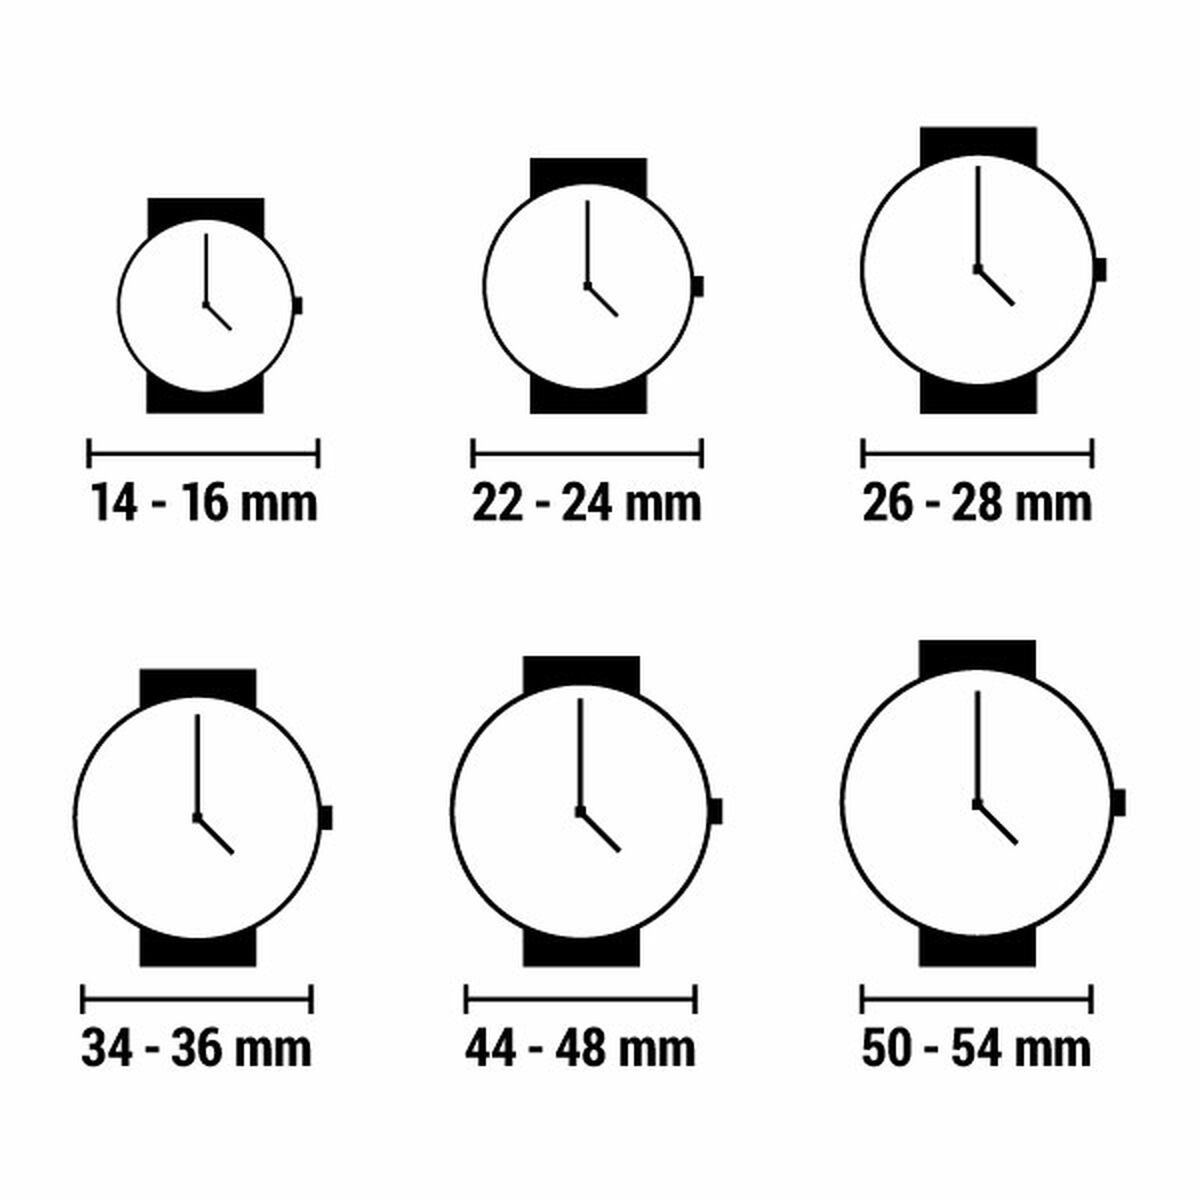 Horloge Dames Viceroy 471298-27 (Ø 32 mm)